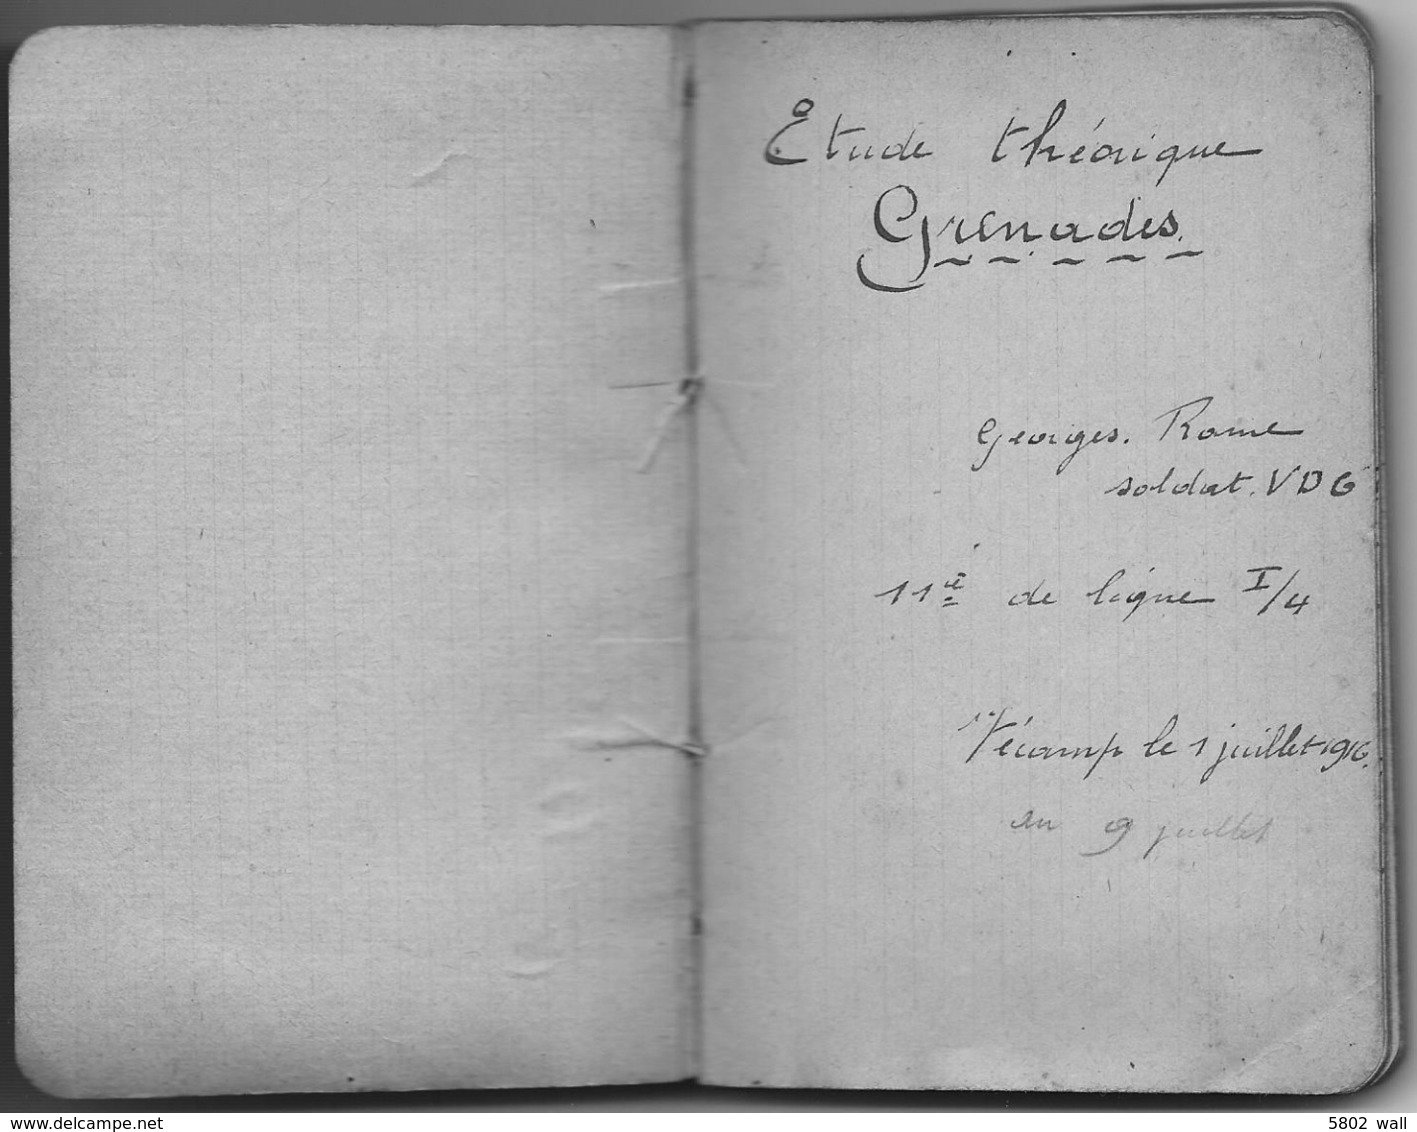 14-18 UNIQUE - Carnet Manuscrit D'Etude Théorique "Grenades" Du Sdt Georges Rome D'Aywaille - 1916 - 1914-18